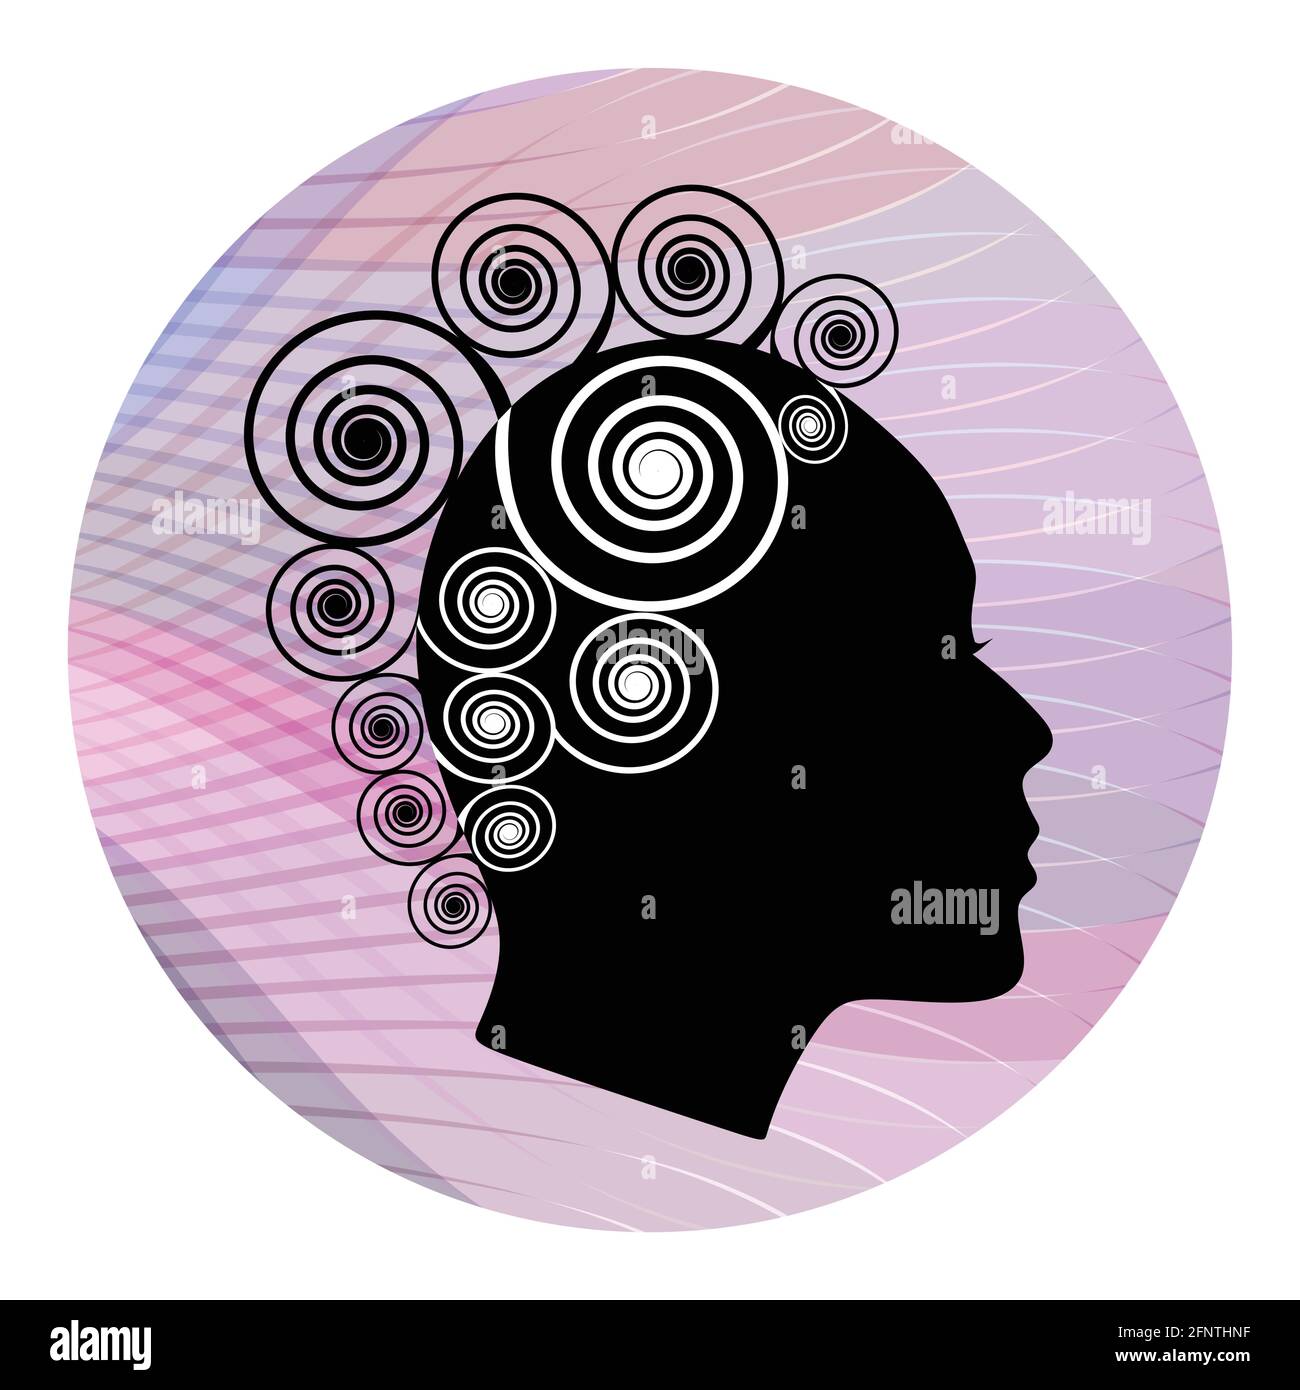 Profil de la tête de femme avec une coiffure extravagante en spirale sur fond ondulé rose. Stylisation en noir et blanc. Silhouette de profil de visage femelle. Emblème pour Illustration de Vecteur